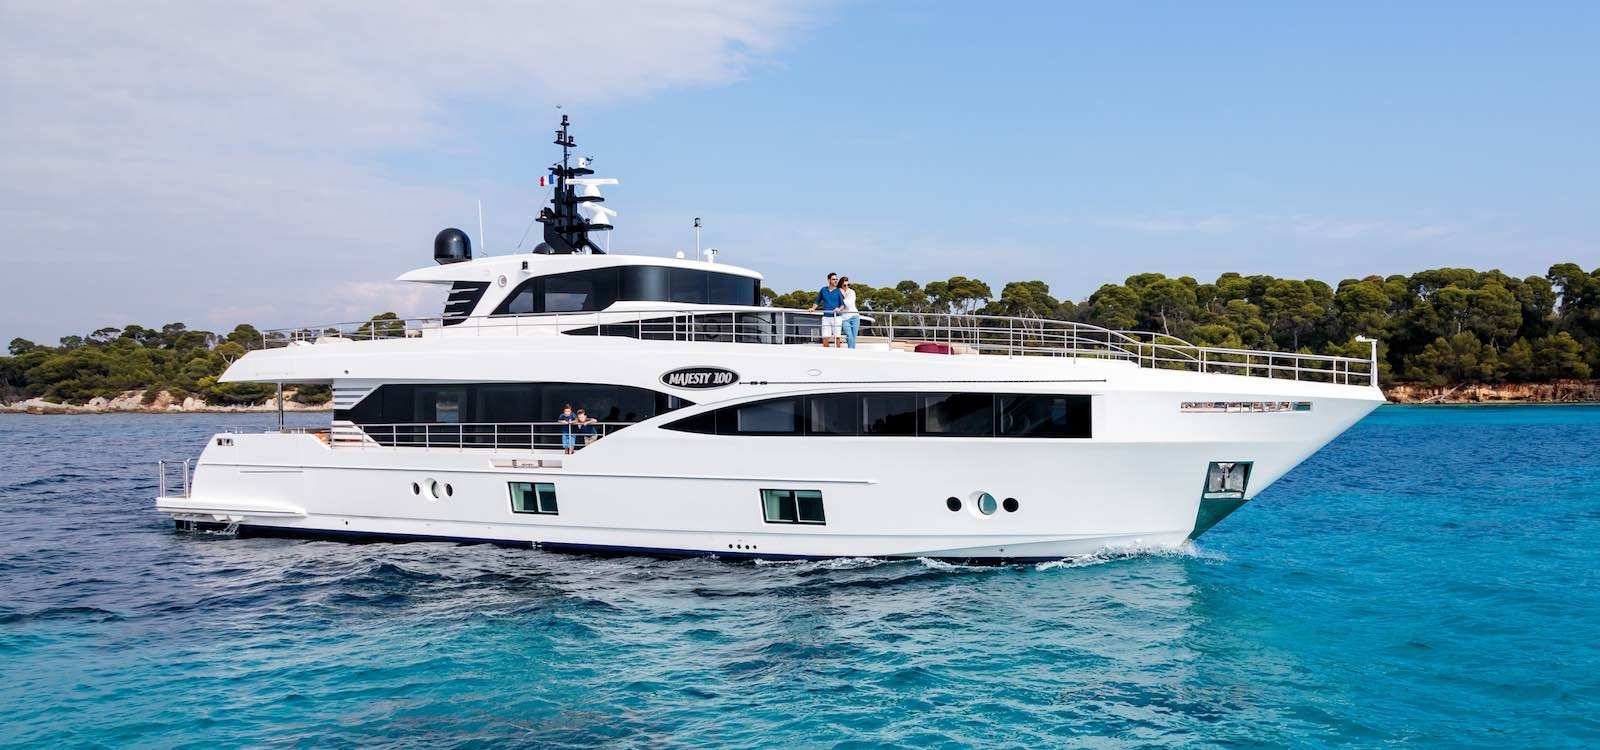 OneWorld Luxury Boat Hire